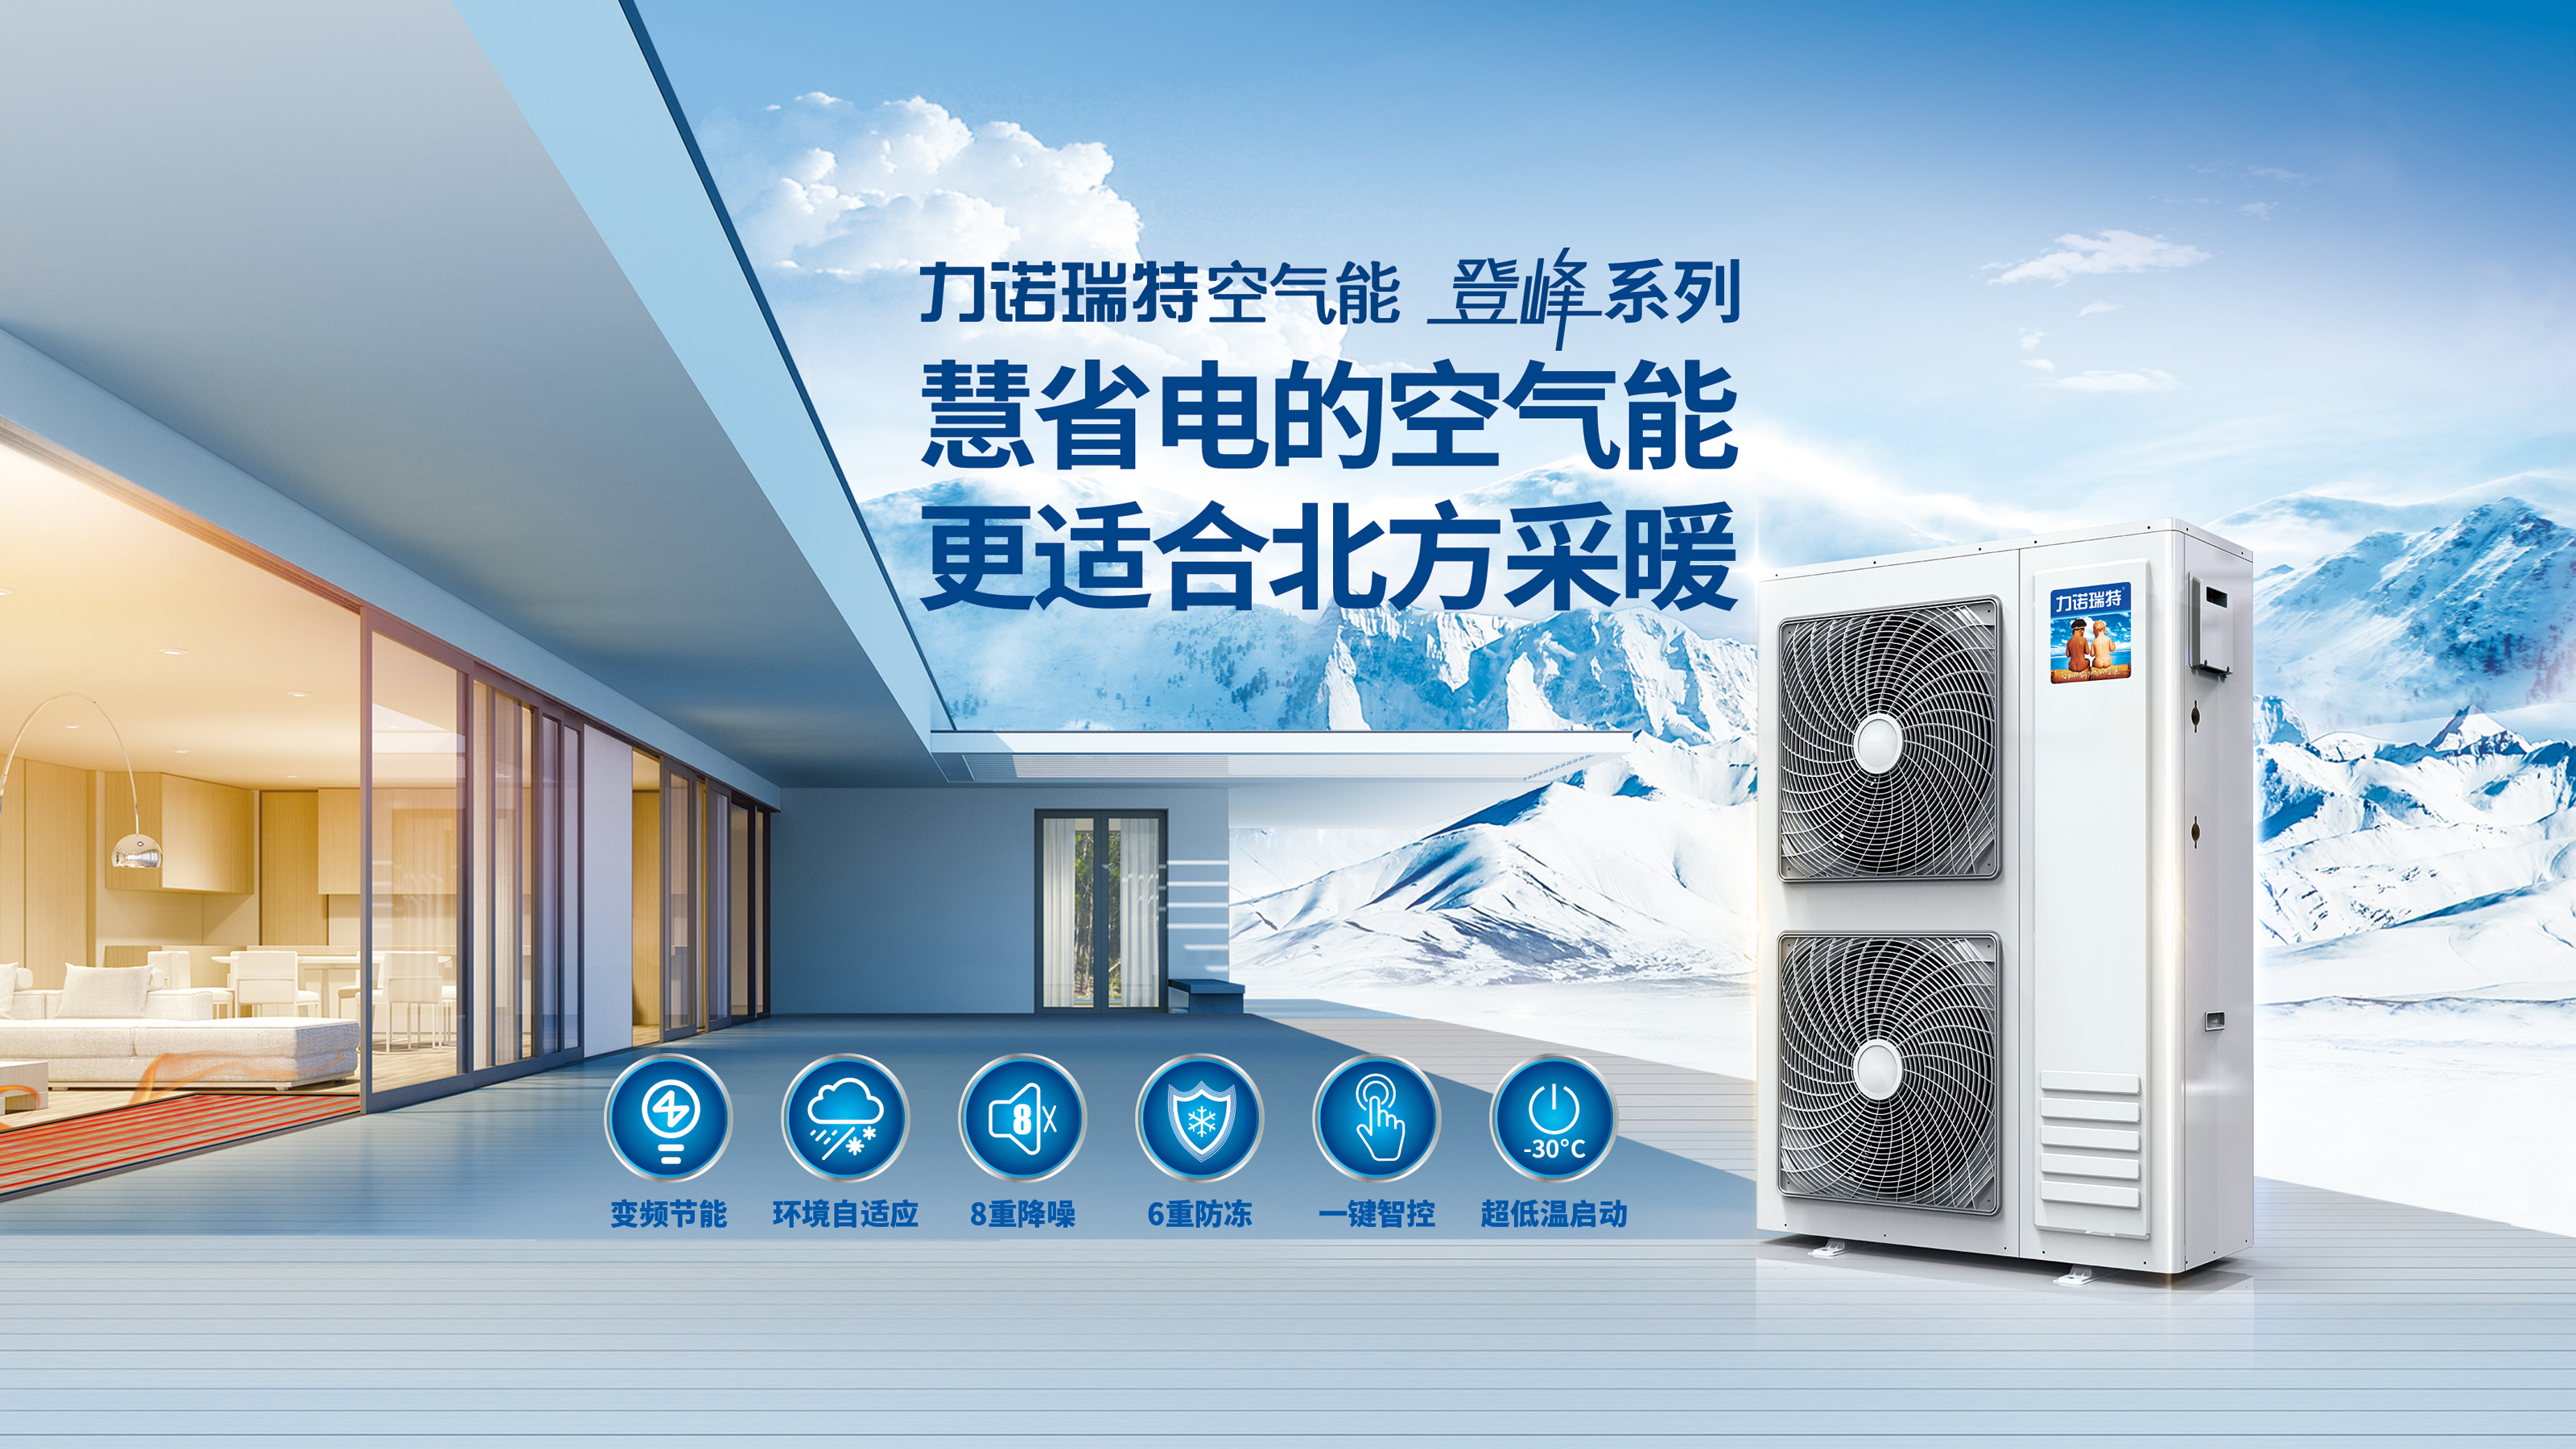 力诺瑞特登峰系列家用空气能热泵冷暖机入选《国家工业和信息化领域节能降碳技术装备推荐目录》